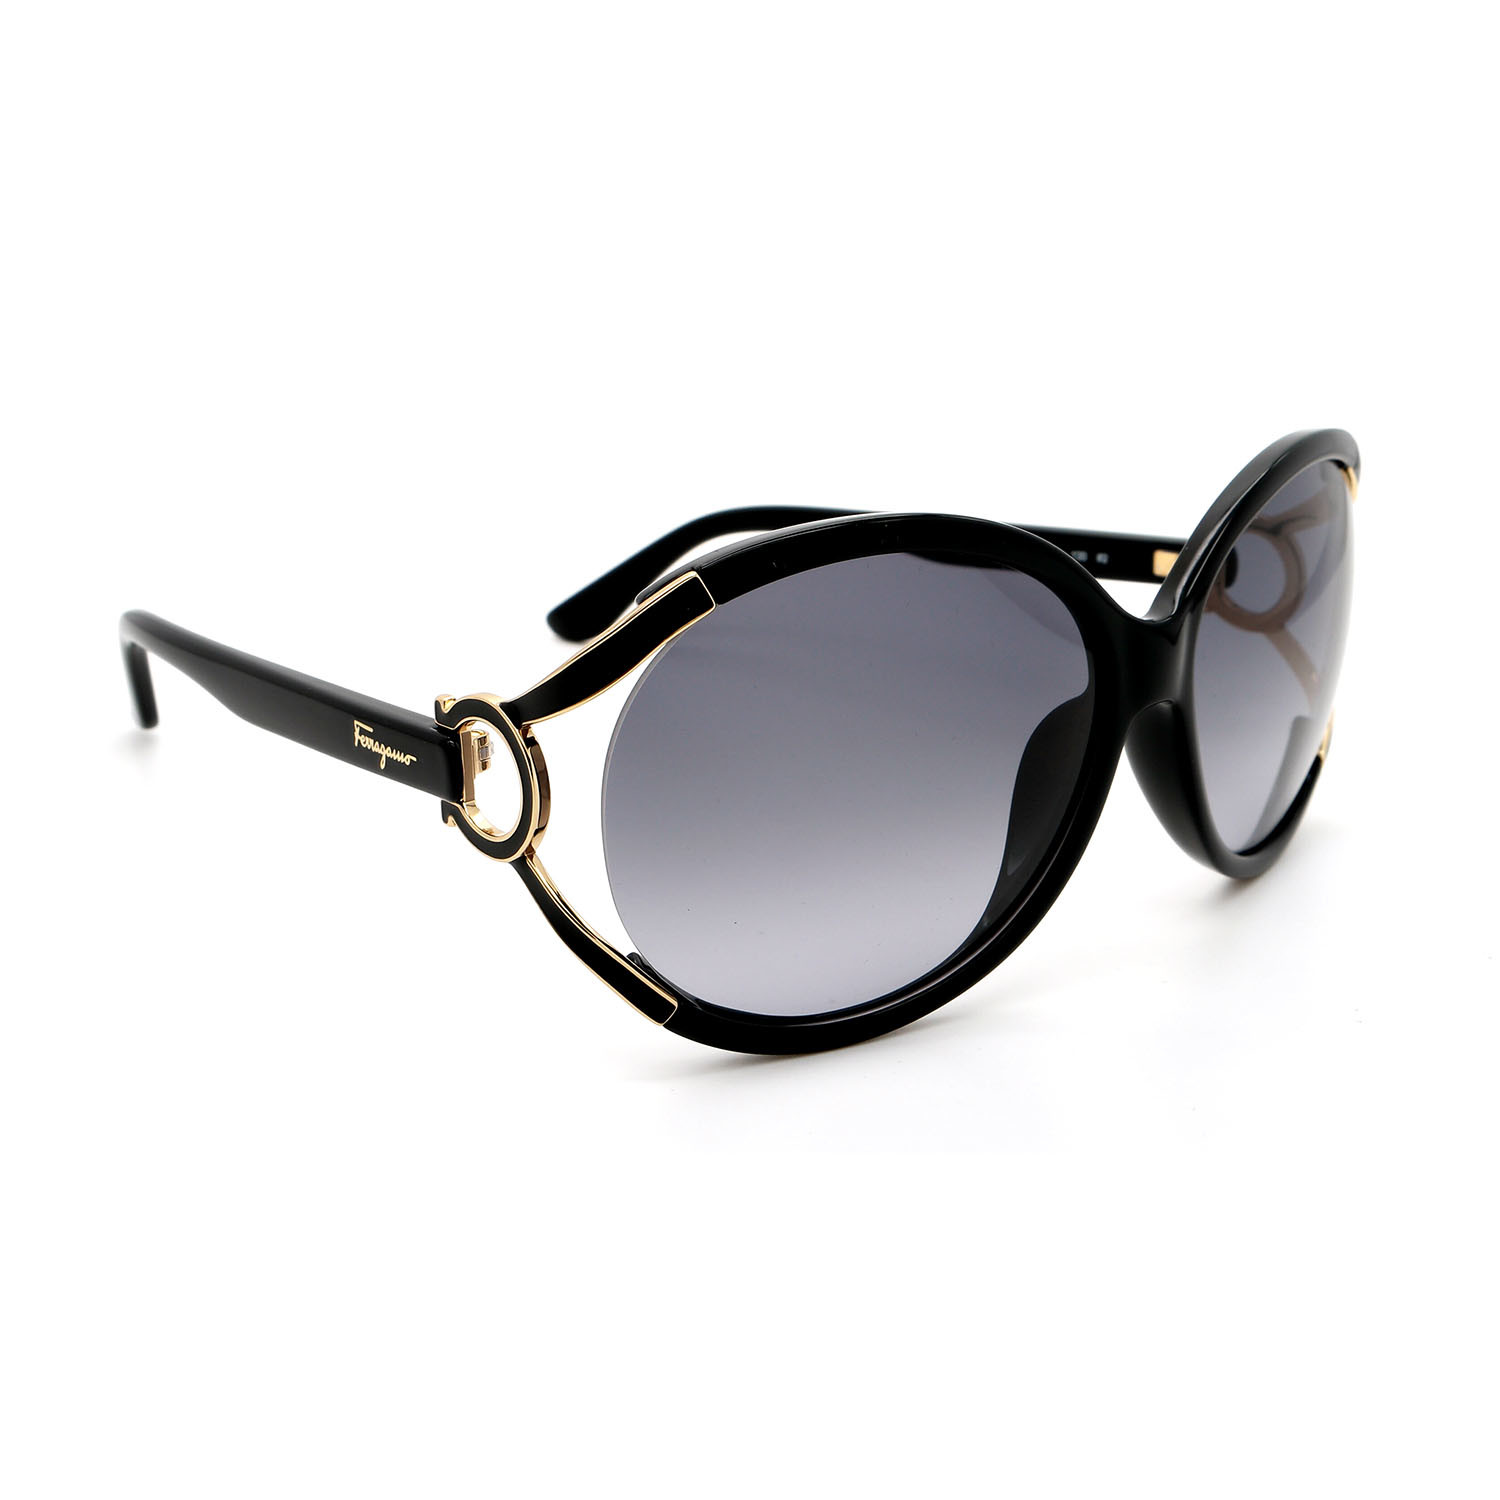 Salvatore Ferragamo // Women's SF600S-001 Oval Sunglasses // Black